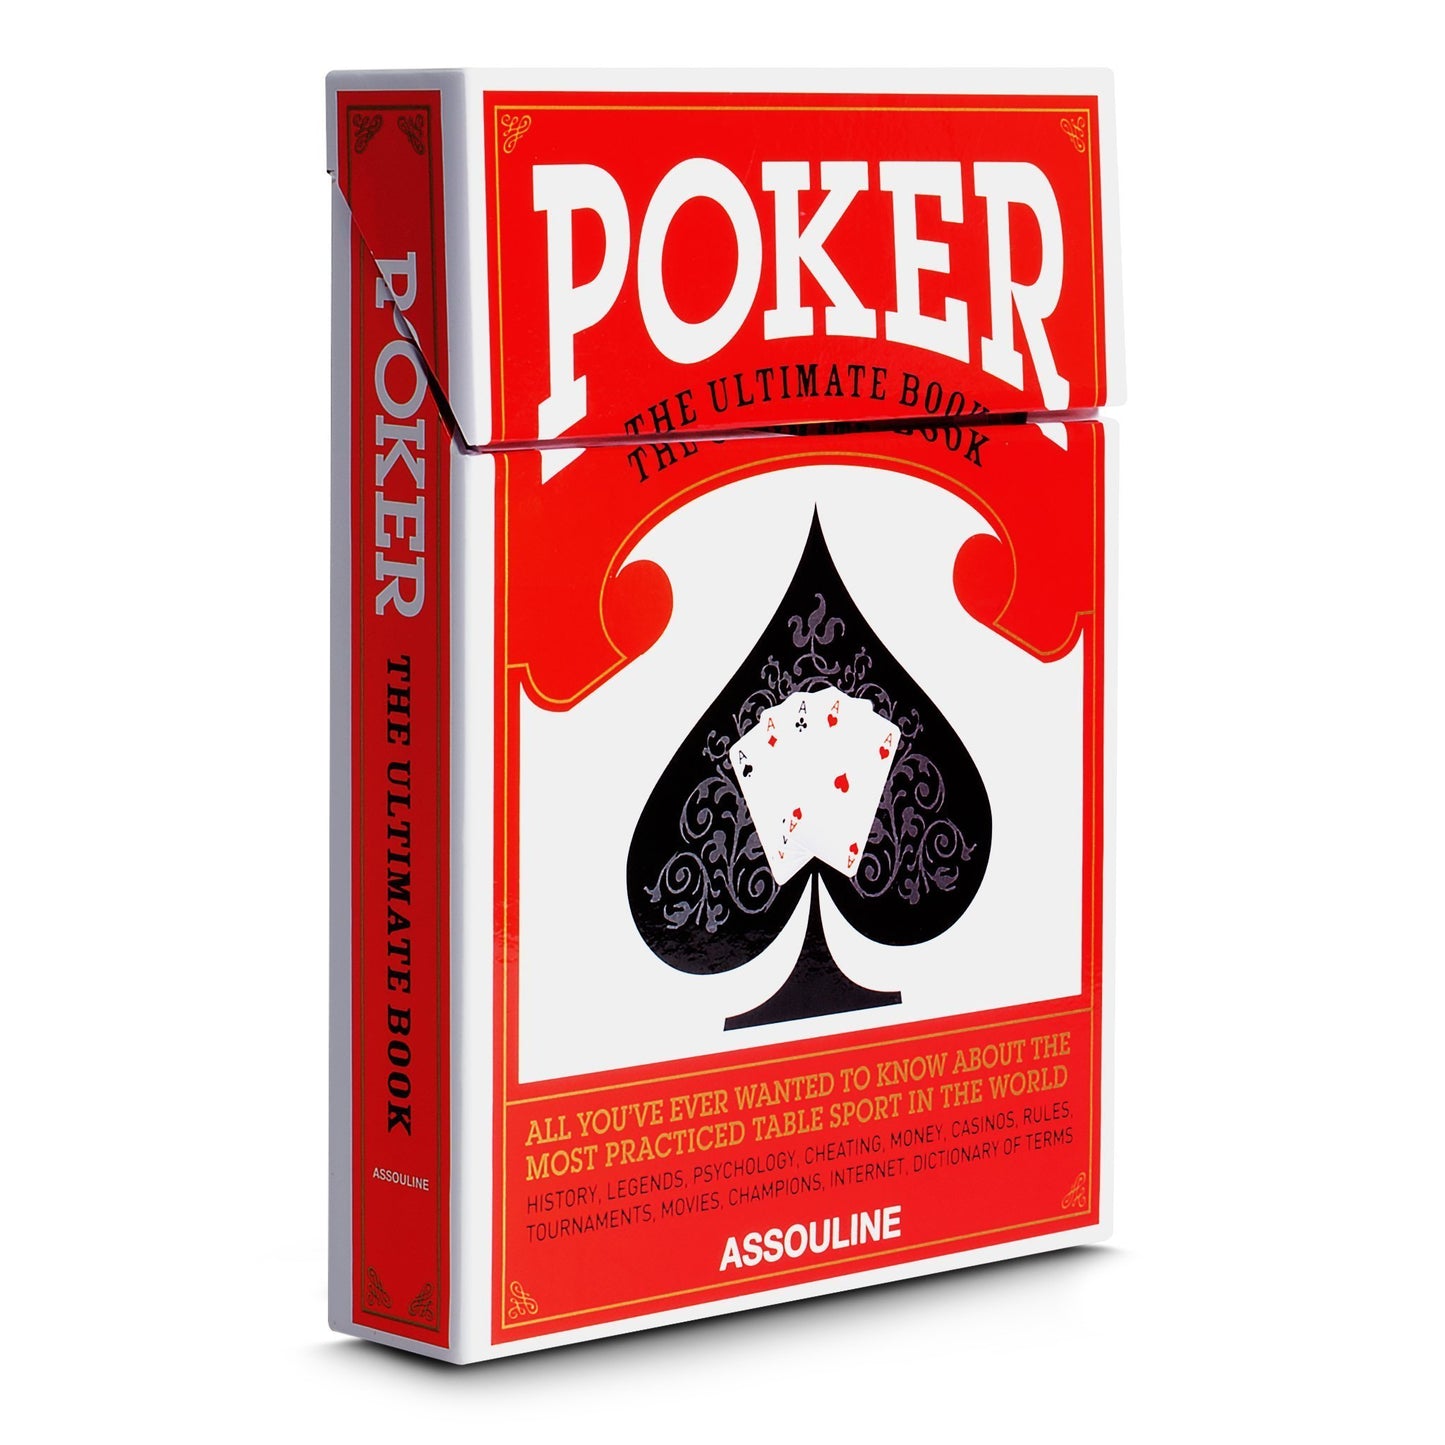 Poker Book